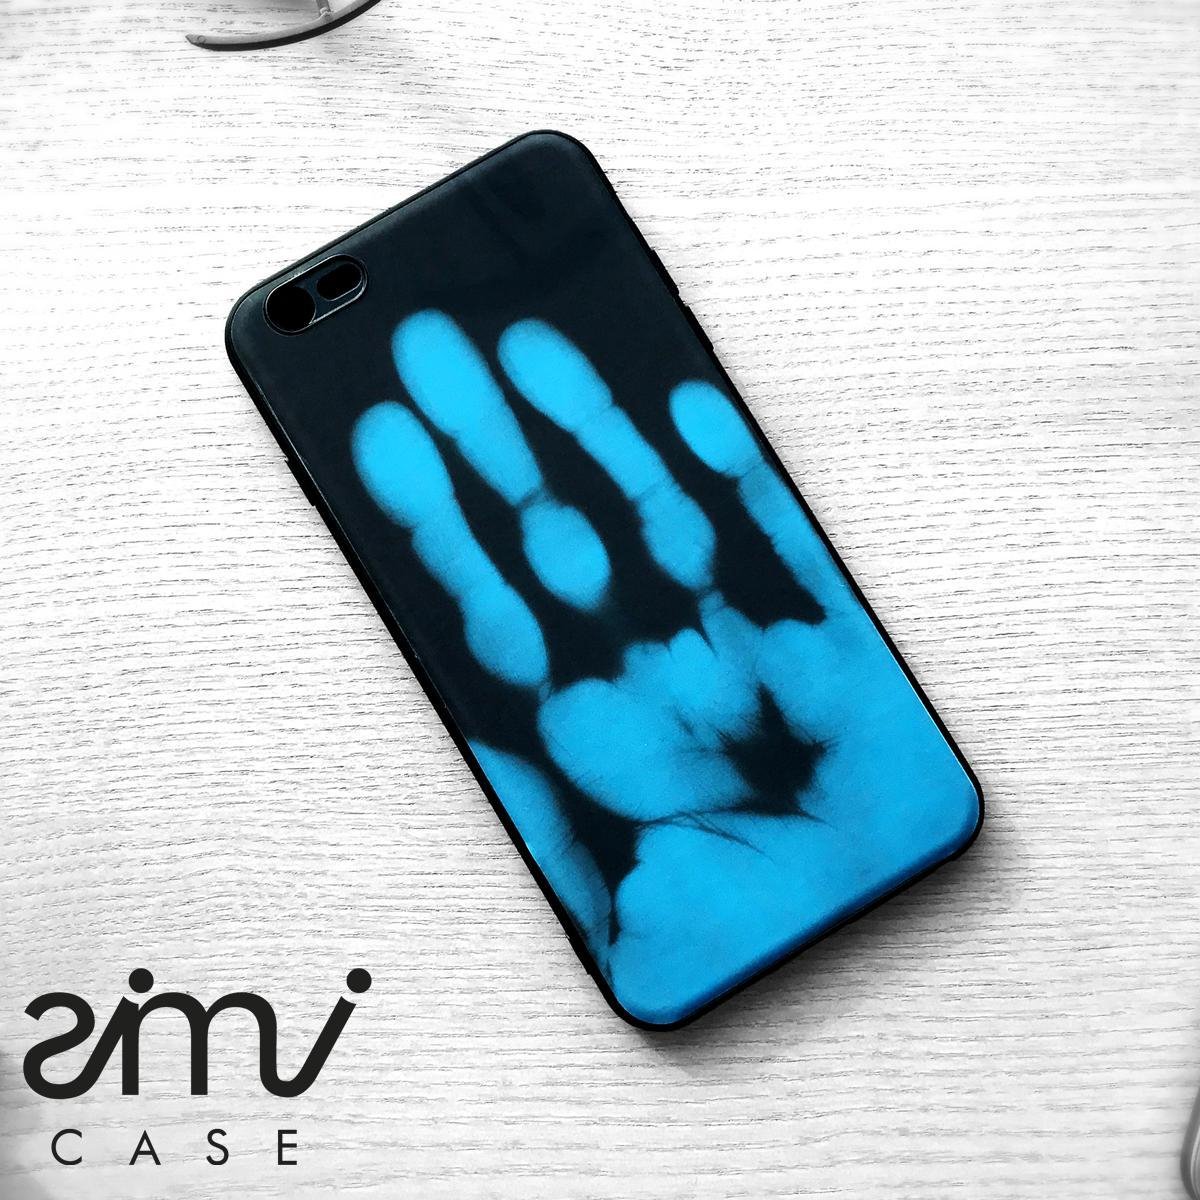 Simi IceCase - Hoesje met gevoelens - iPhone 7+